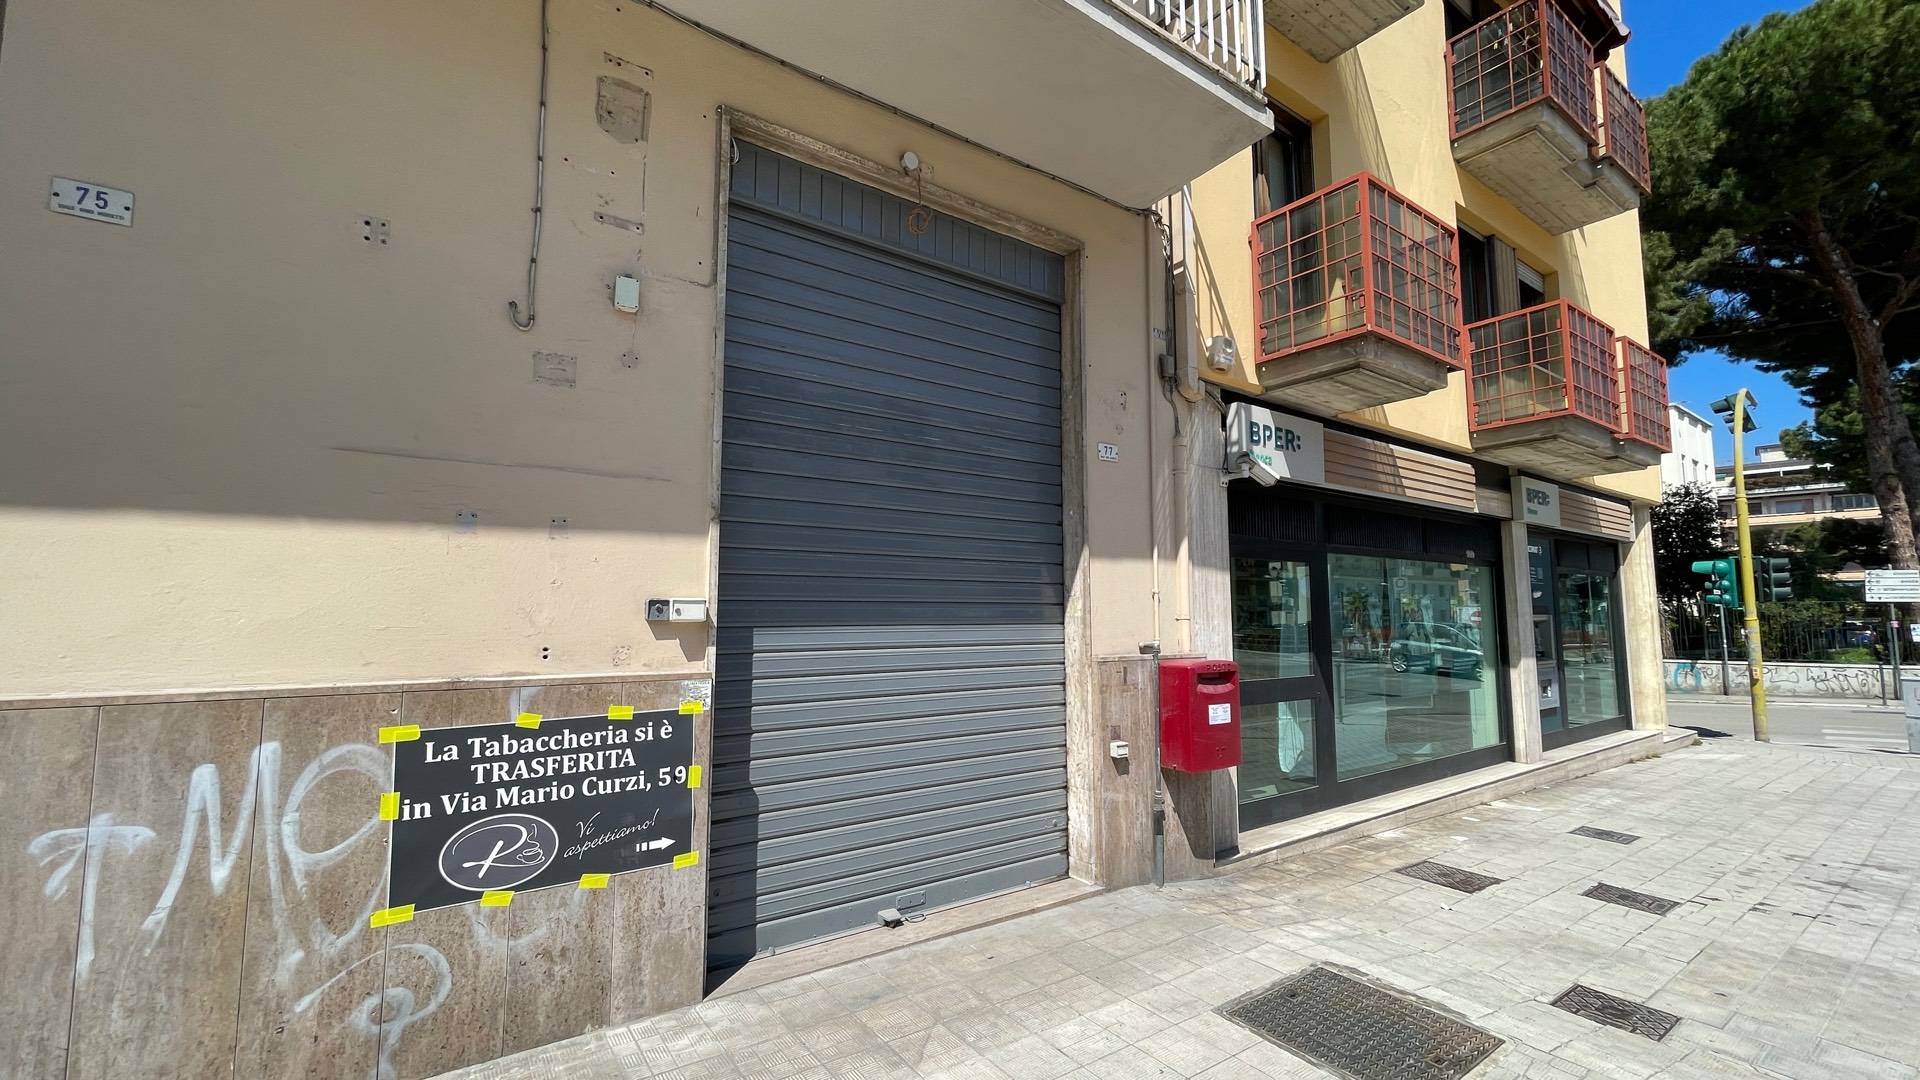 Locale commerciale in vendita, San Benedetto del Tronto centralissima